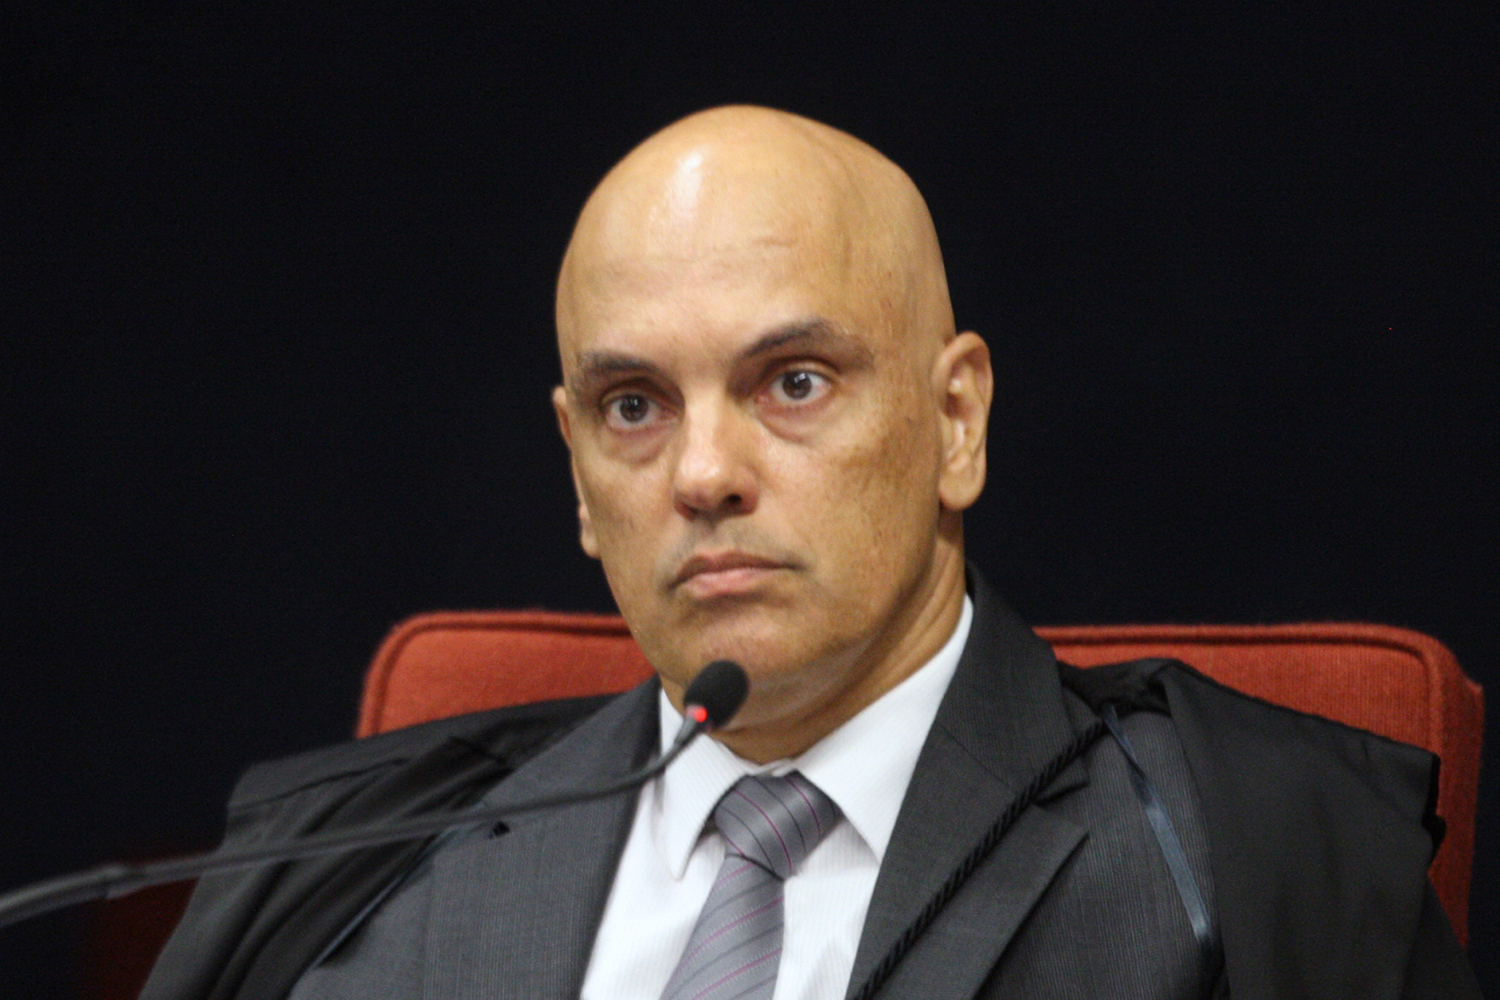 Ministro do STF Alexandre de Moraes é diagnosticado com Covid-19 | VEJA